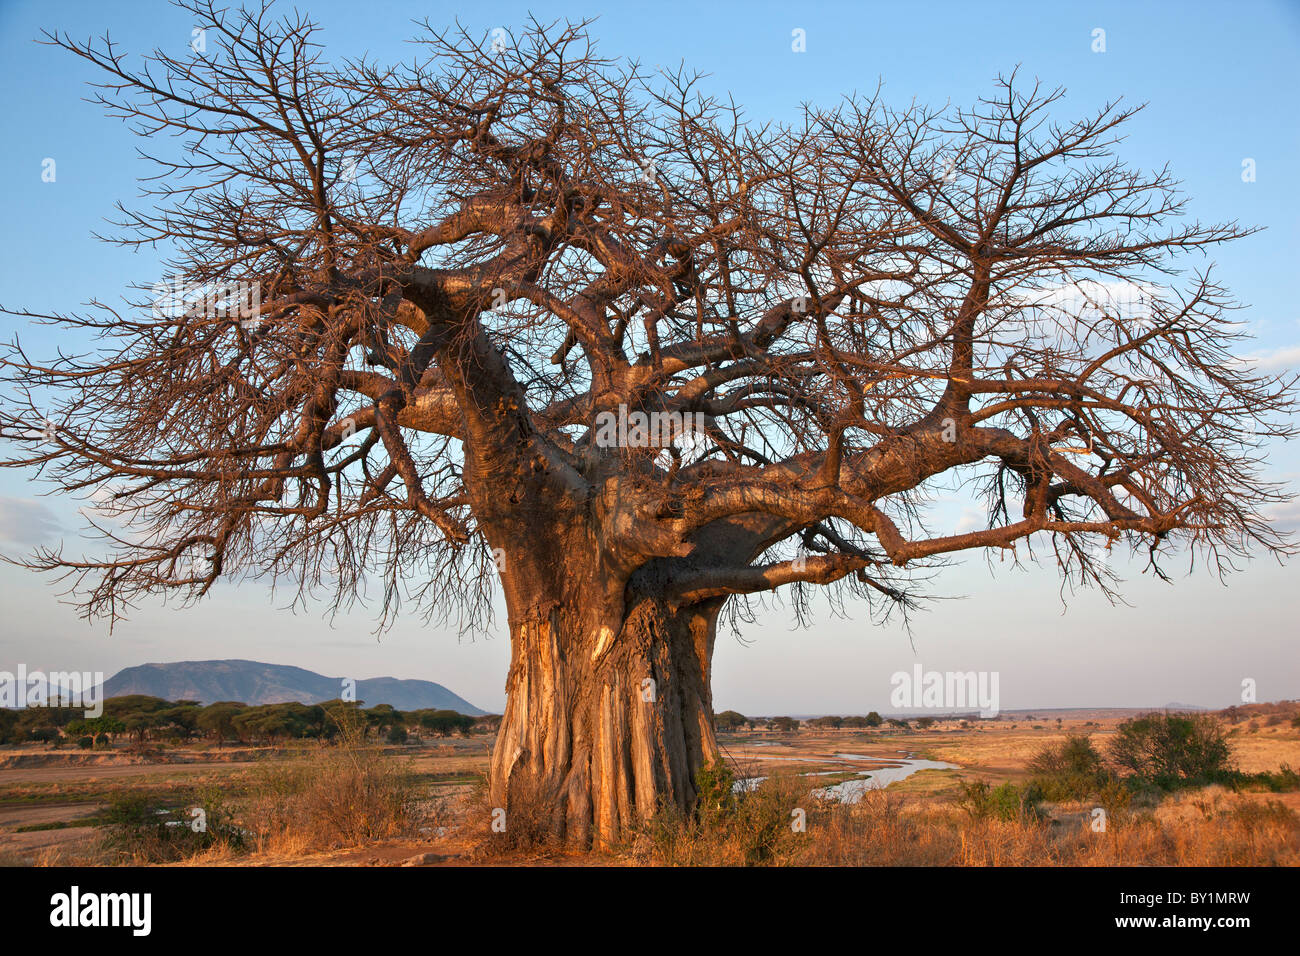 Einen großen Baobab-Baum wächst am Ufer des Great Ruaha River in Ruaha-Nationalpark.  Elefant Schäden an der Rinde von seiner Stockfoto